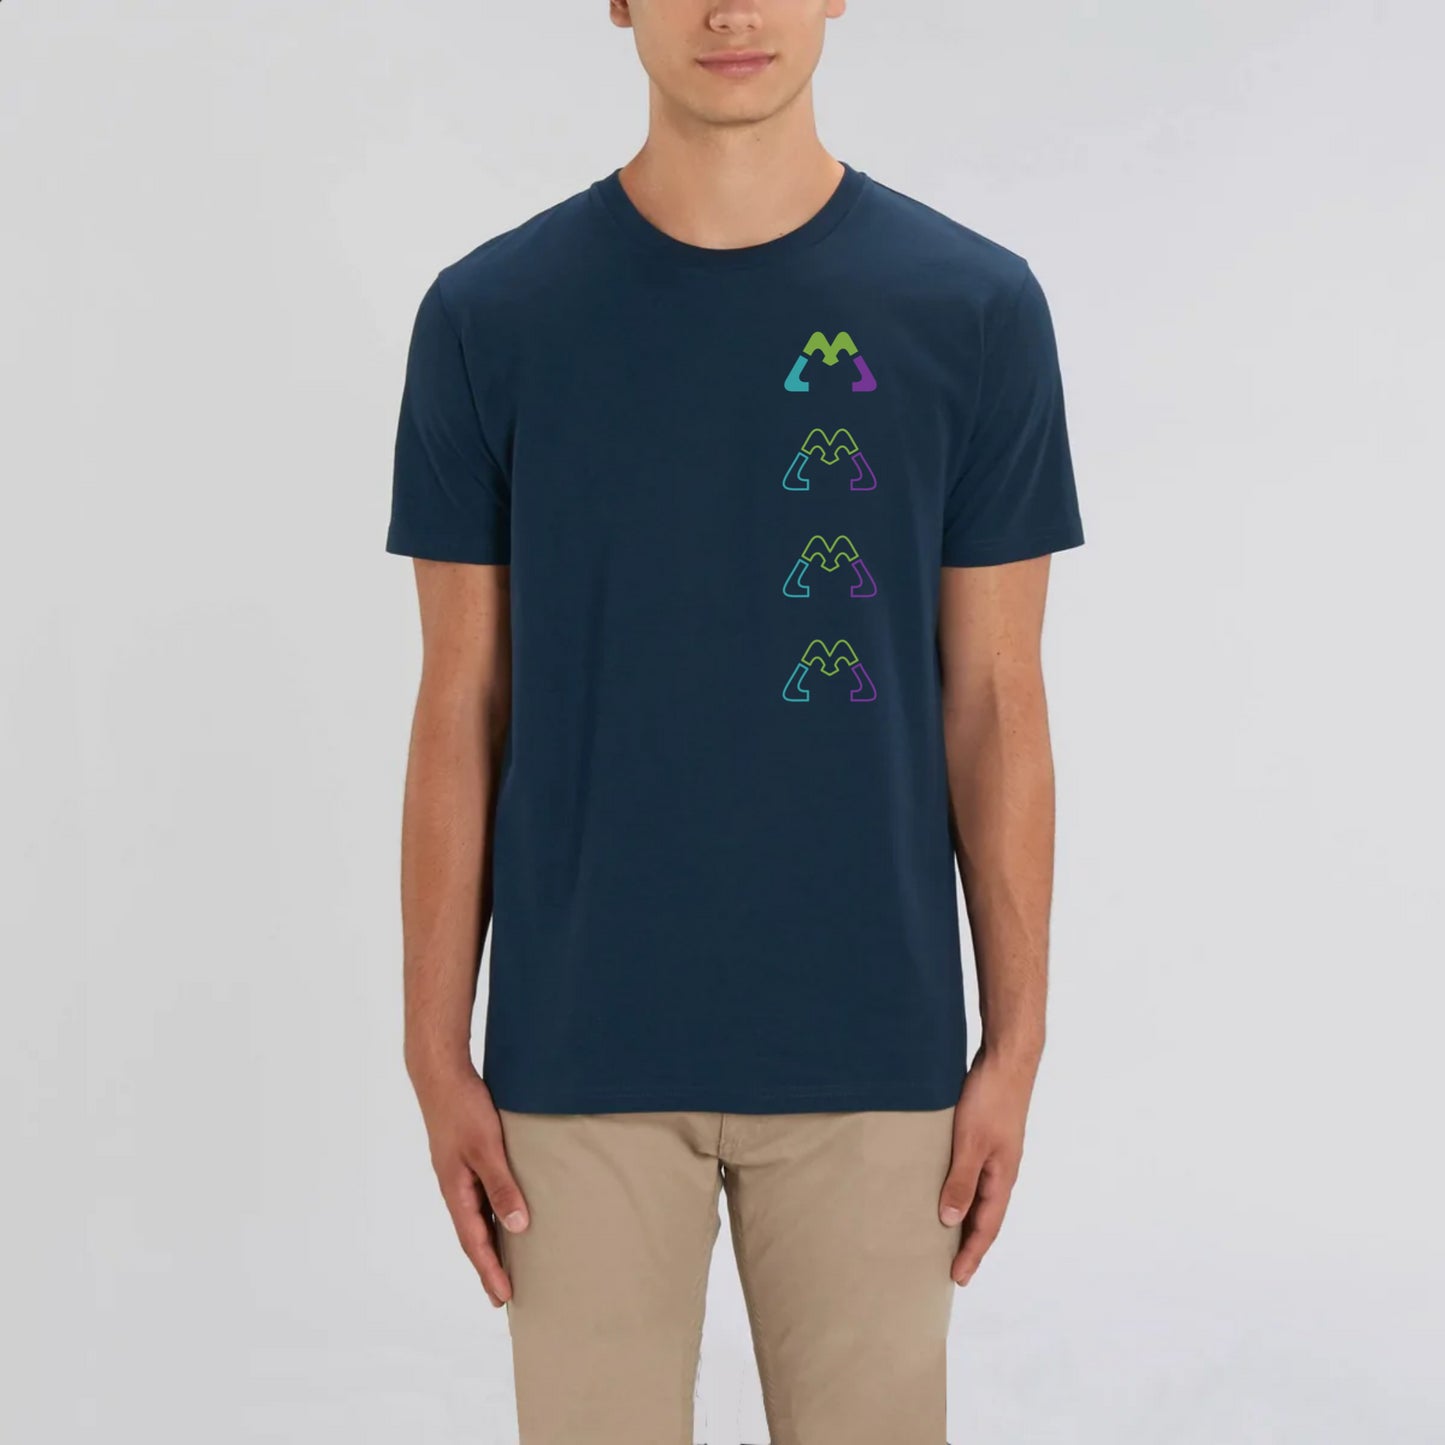 MMM — t-shirt, unisexe, bio